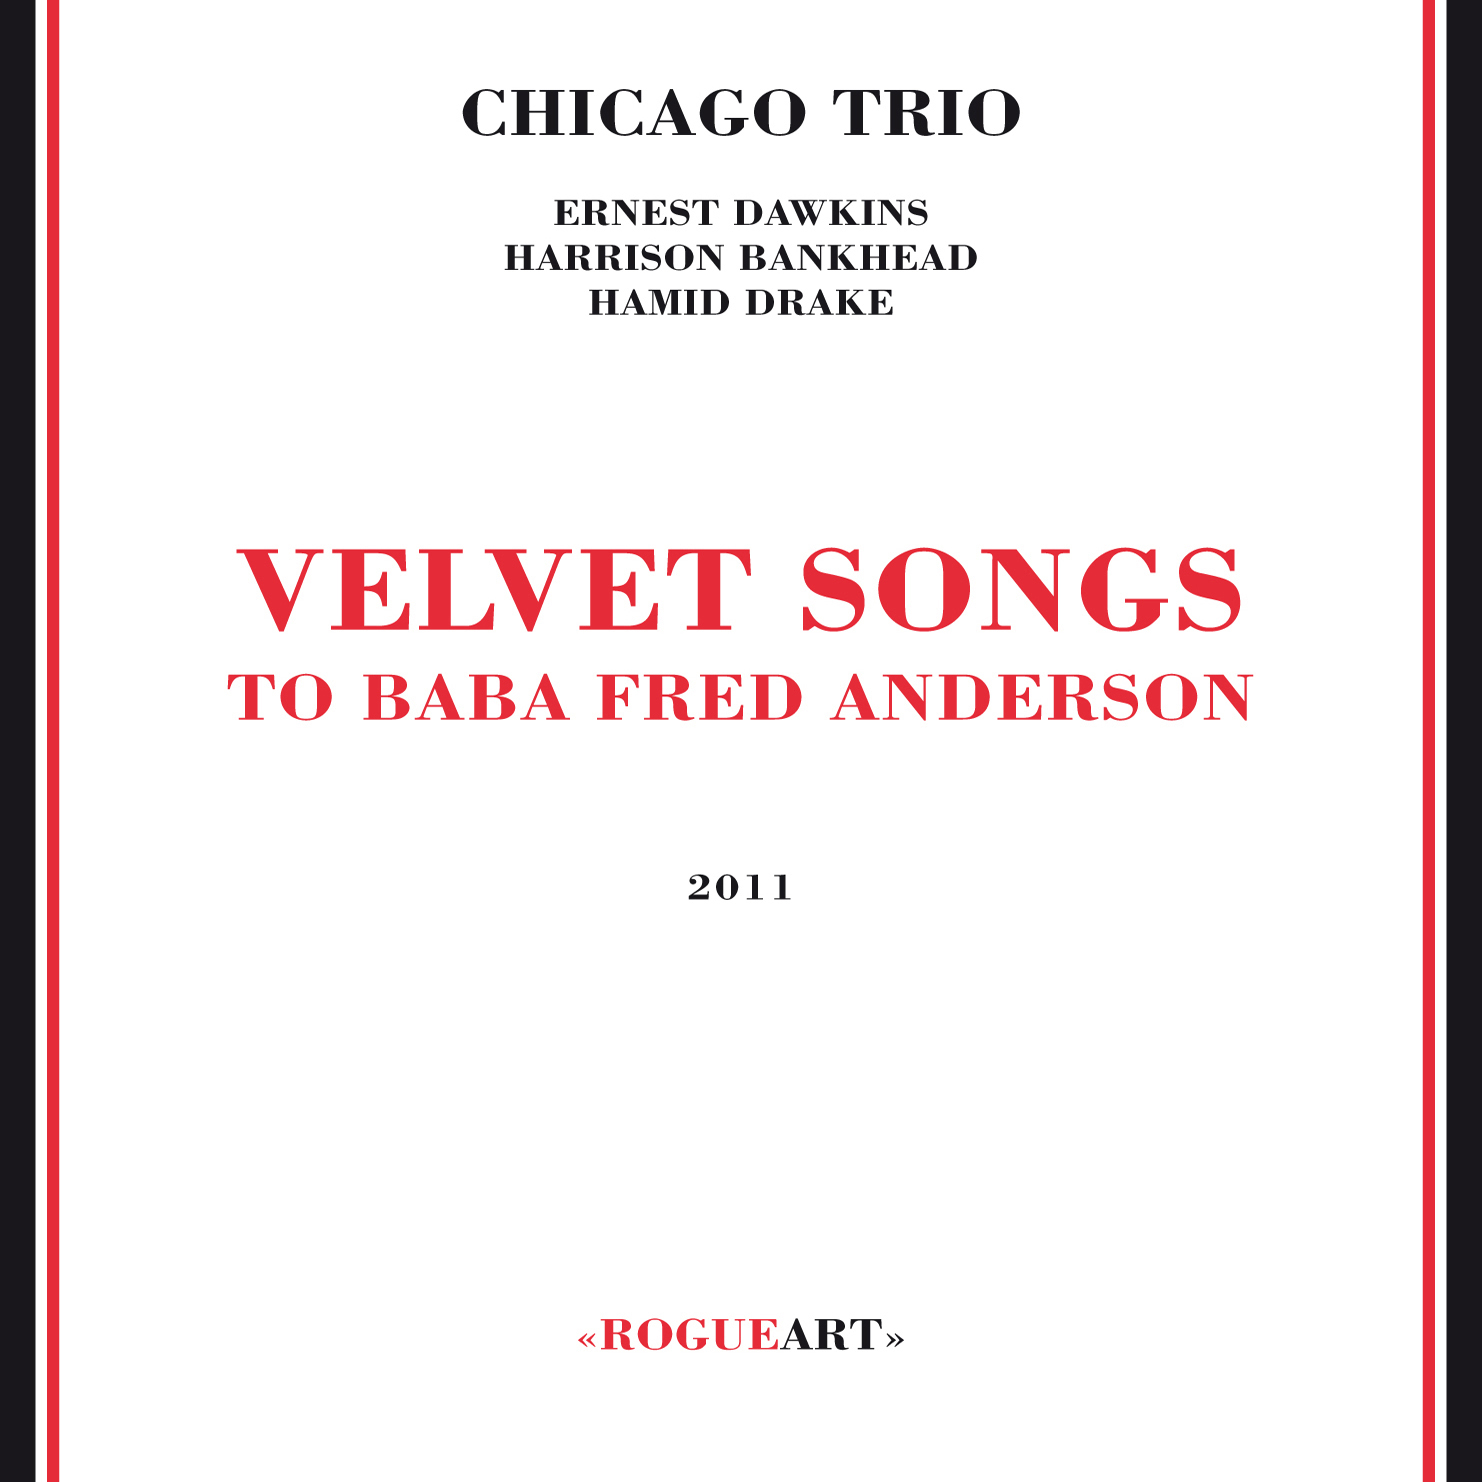 Chicago Trio (Ernest Dawkins, Harrison Bankhead, Hamid Drake) - Velvet Songs